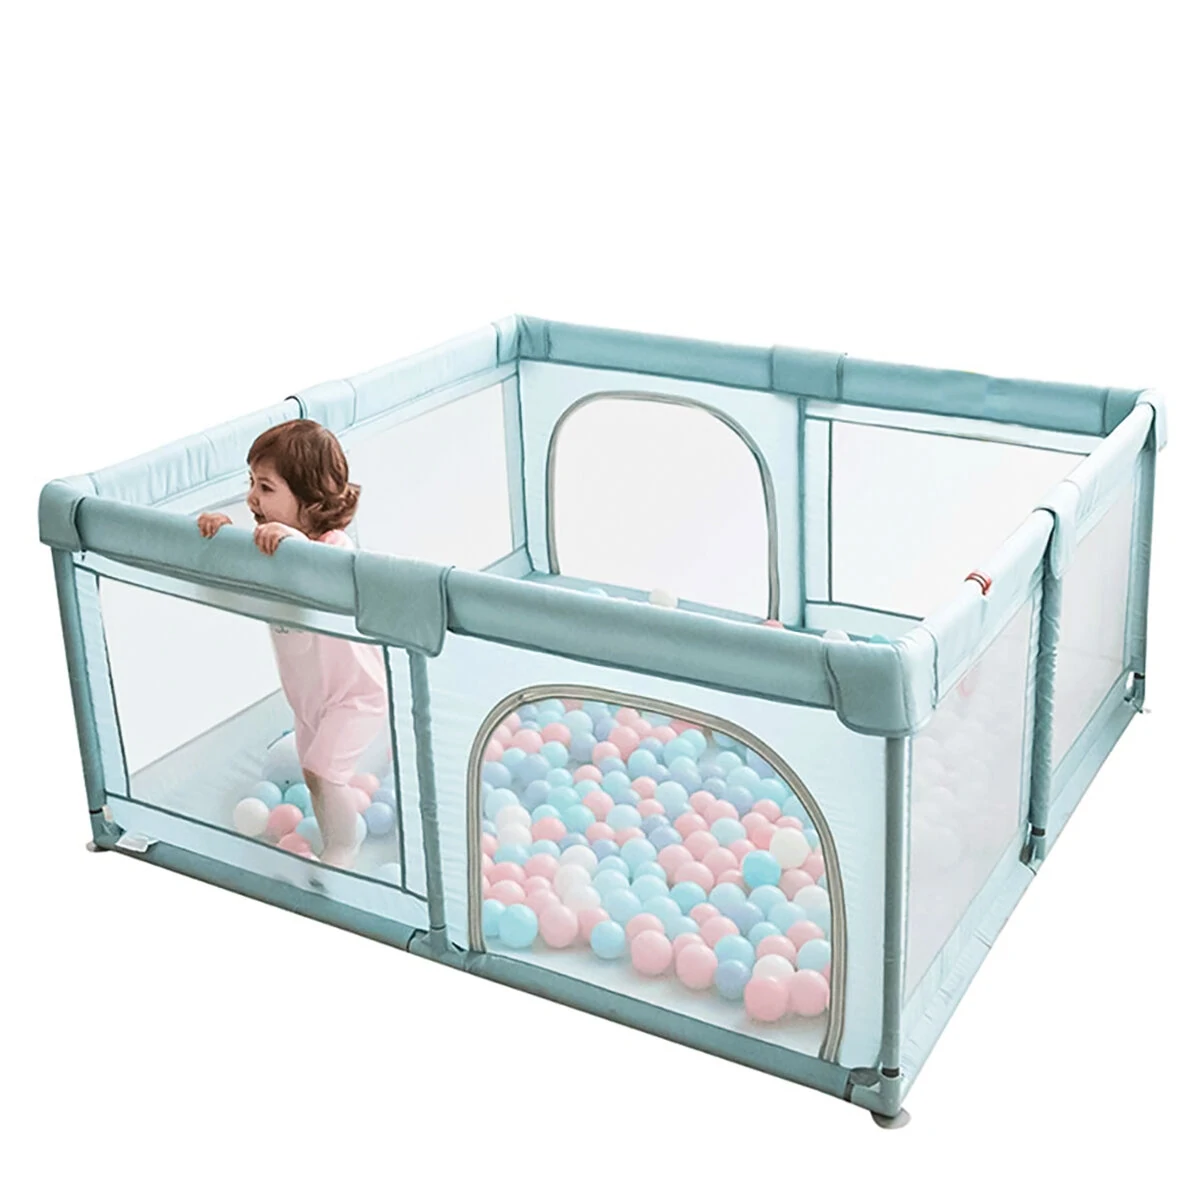 Στα 65,60€Baby Playpen Interactive Safety Indoor Gate Play Yards Tent Court Foldable Portable Kids Furniture for Children Large Dry Pool Playground Park 0-6 Years Fence – 1.5*1.8m